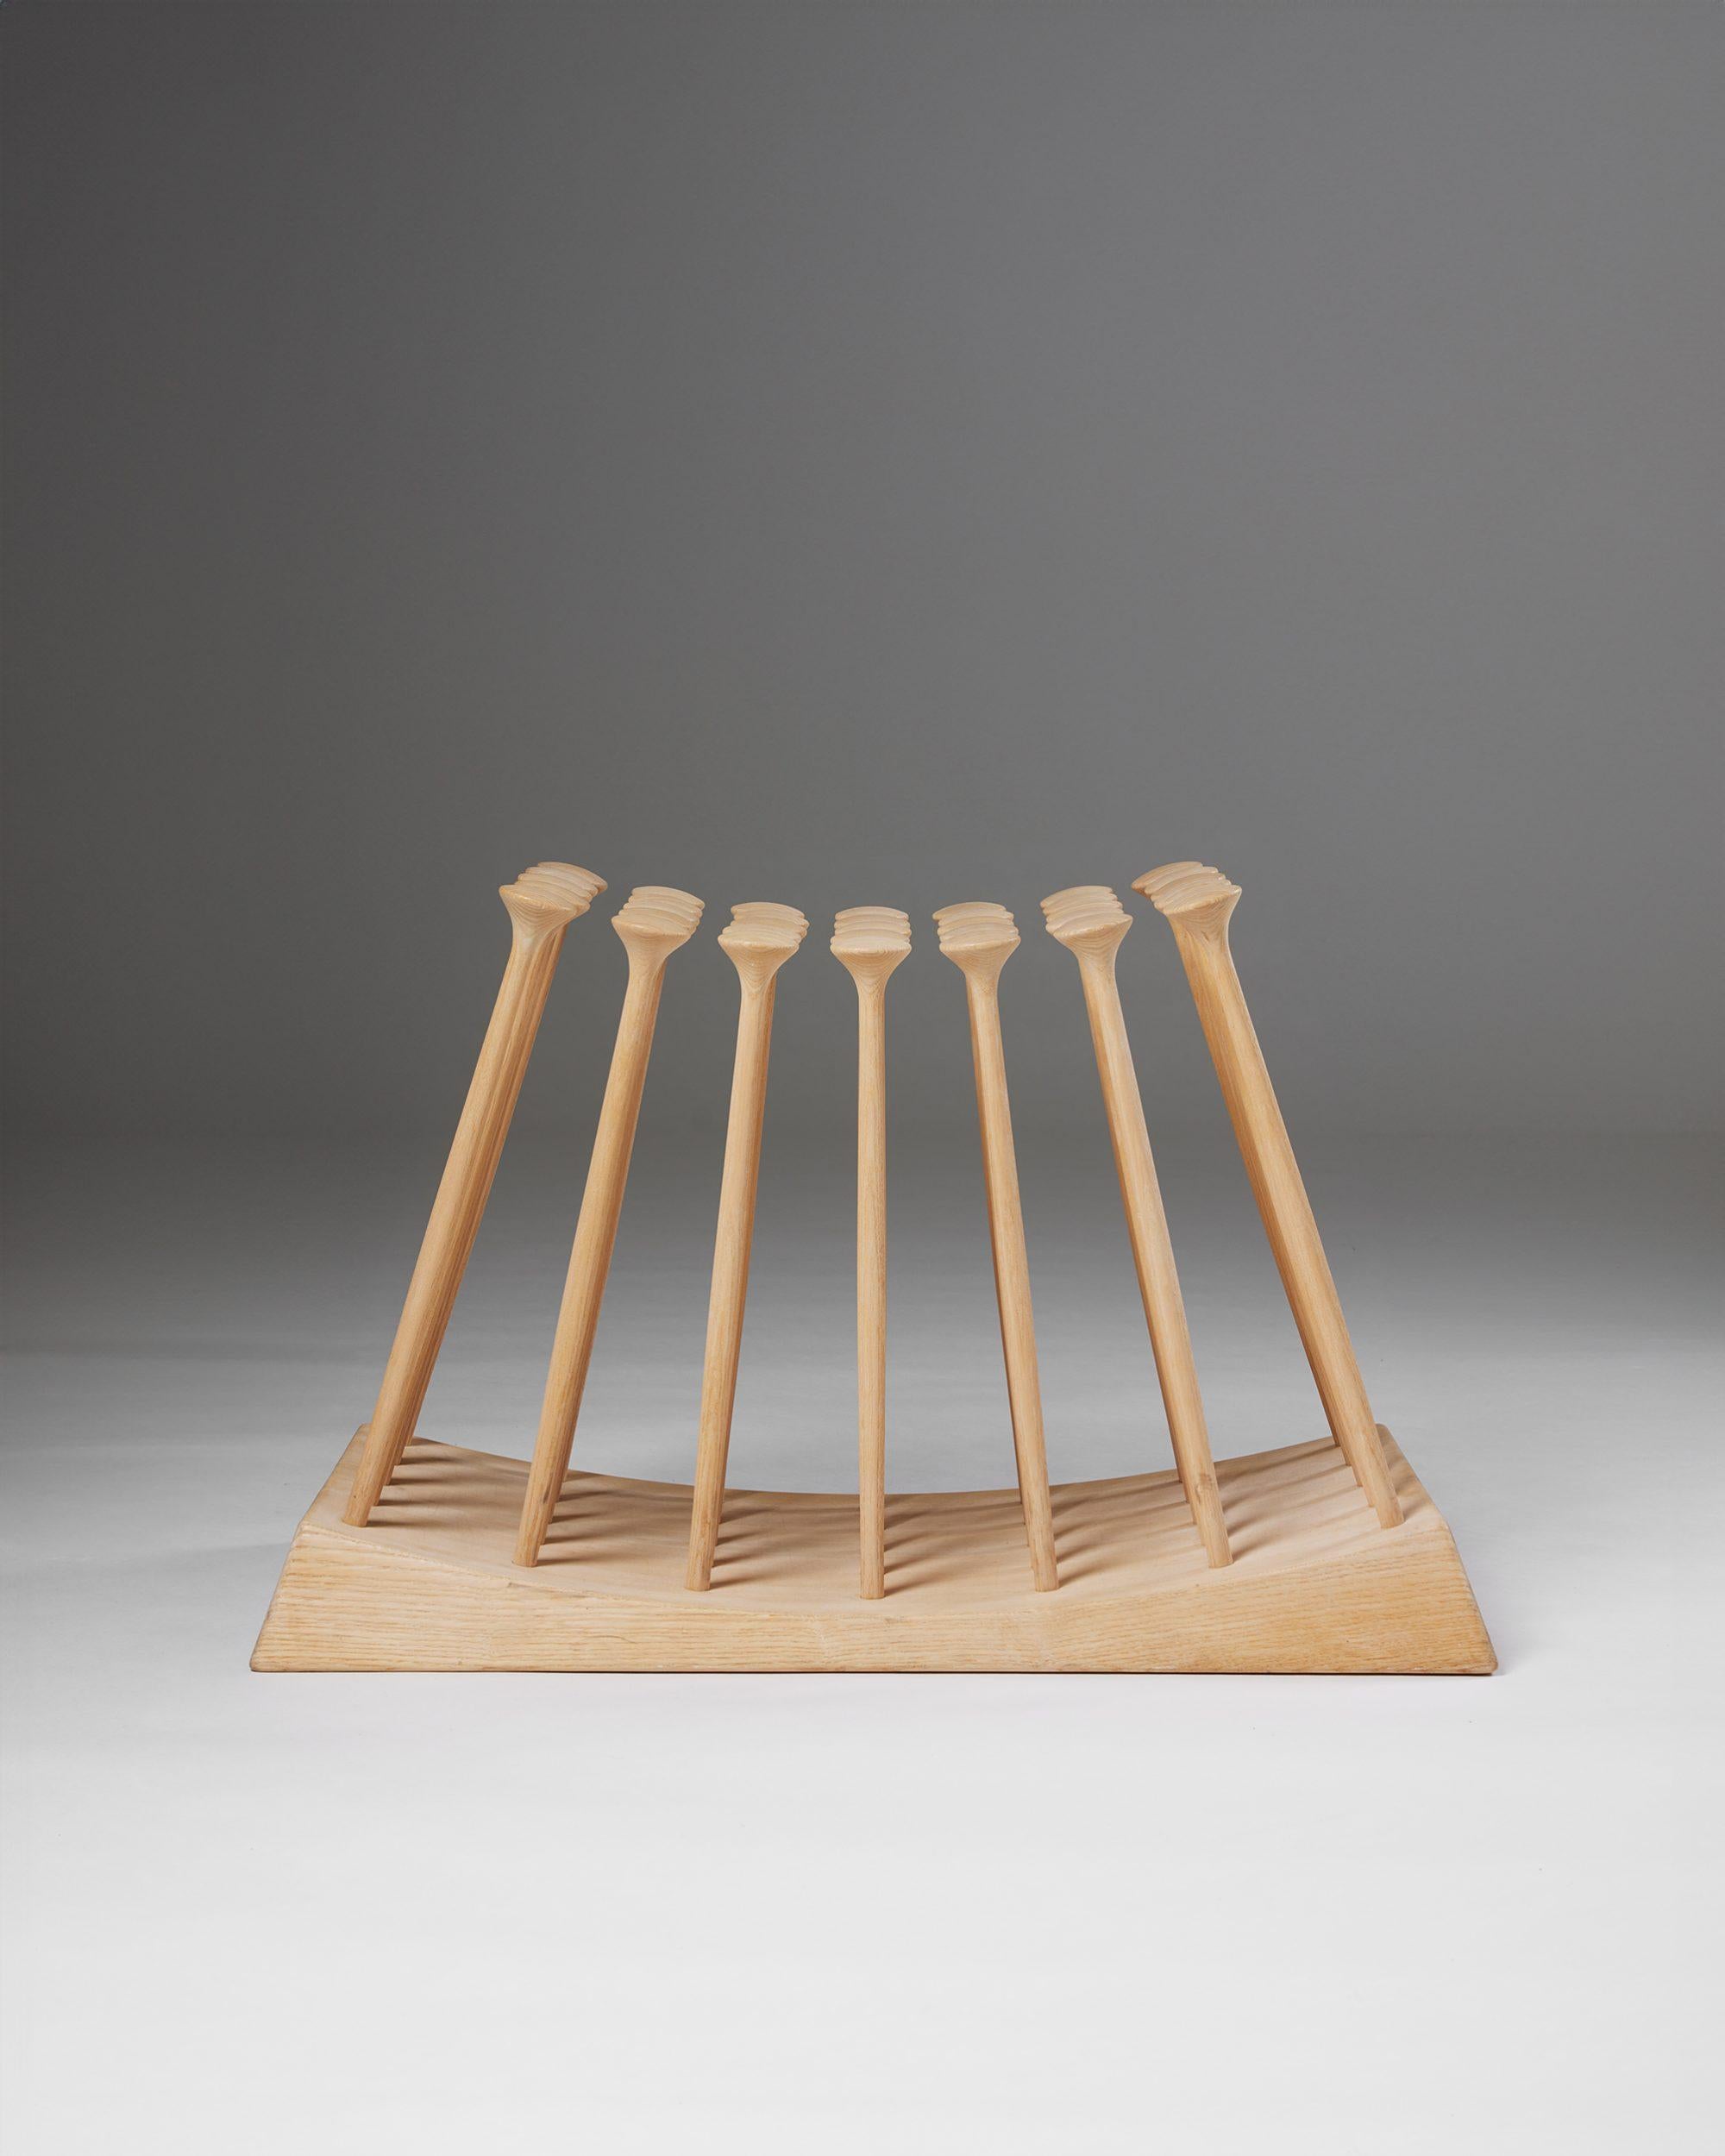 Stool ‘The Unrockable’ designed by Hans Sandgren Jakobsen for Werner,
Denmark, 2010s.

Ash.

Stamped.